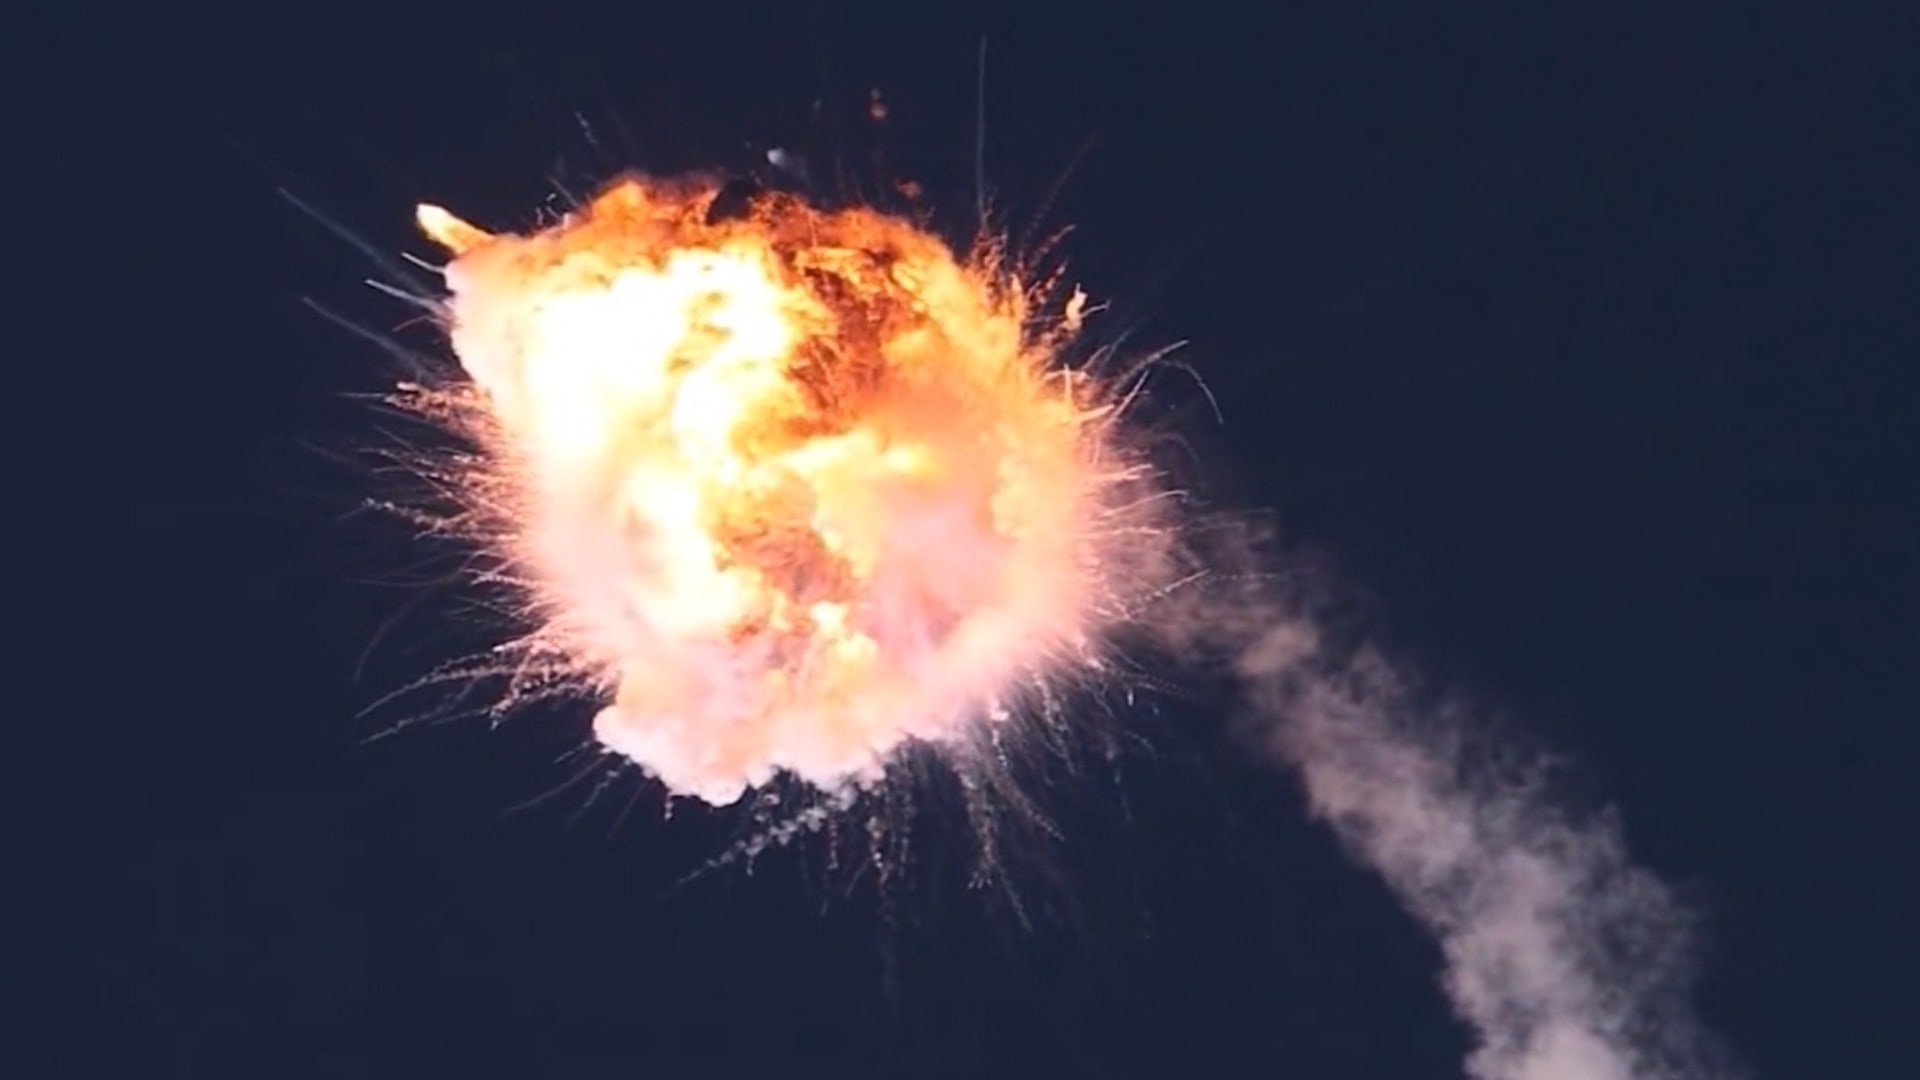 فيديو يُظهر انفجار صاروخ فضائي في الجو بعد وقت قصير من إطلاقه في كاليفورنيا